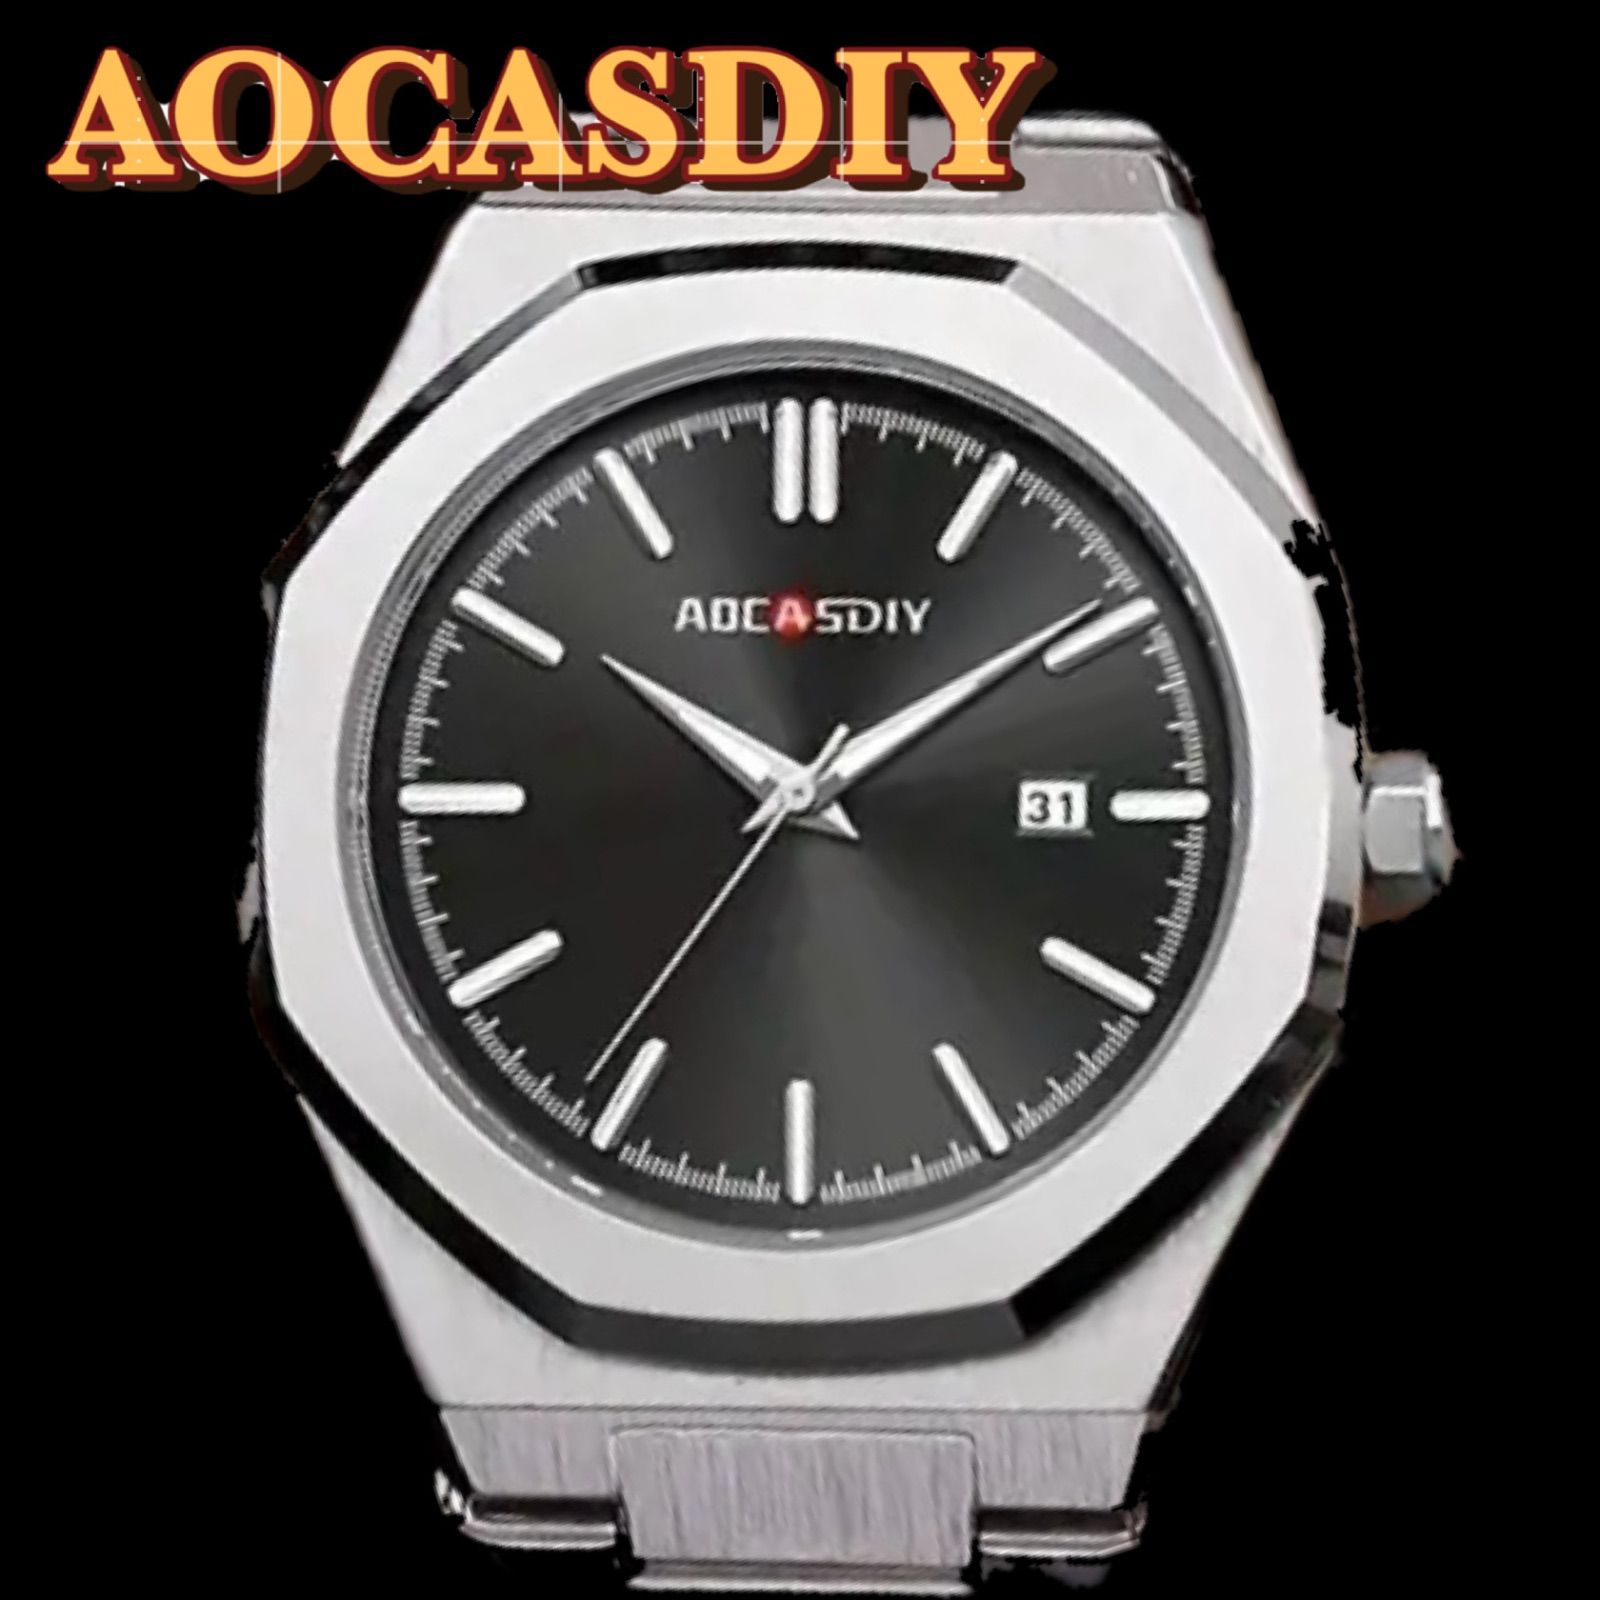 新品 AOCASDIY オクタゴンオマージュウォッチ メンズ腕時計 ステンレスベルト ブラックu0026シルバー - メルカリ